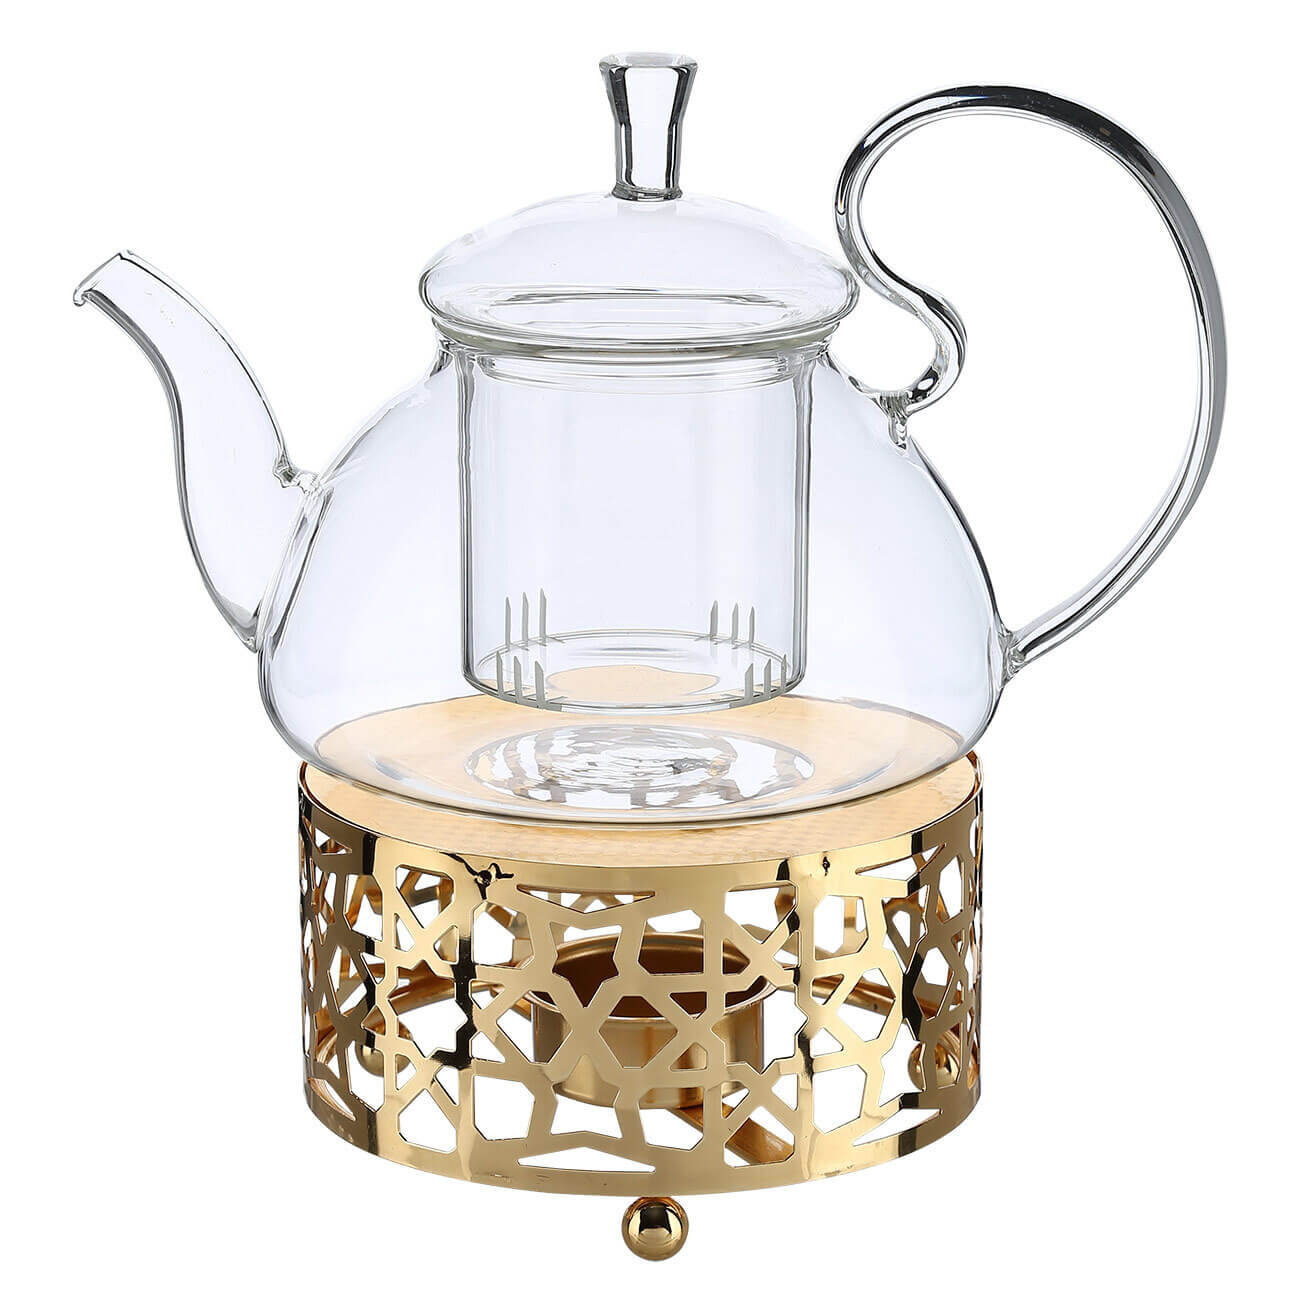 Чайник заварочный, 800 мл, с подогревом, стекло Б/металл, золотистый, Ellan чайник заварочный 850 мл фарфор f бело золотистый premium gold